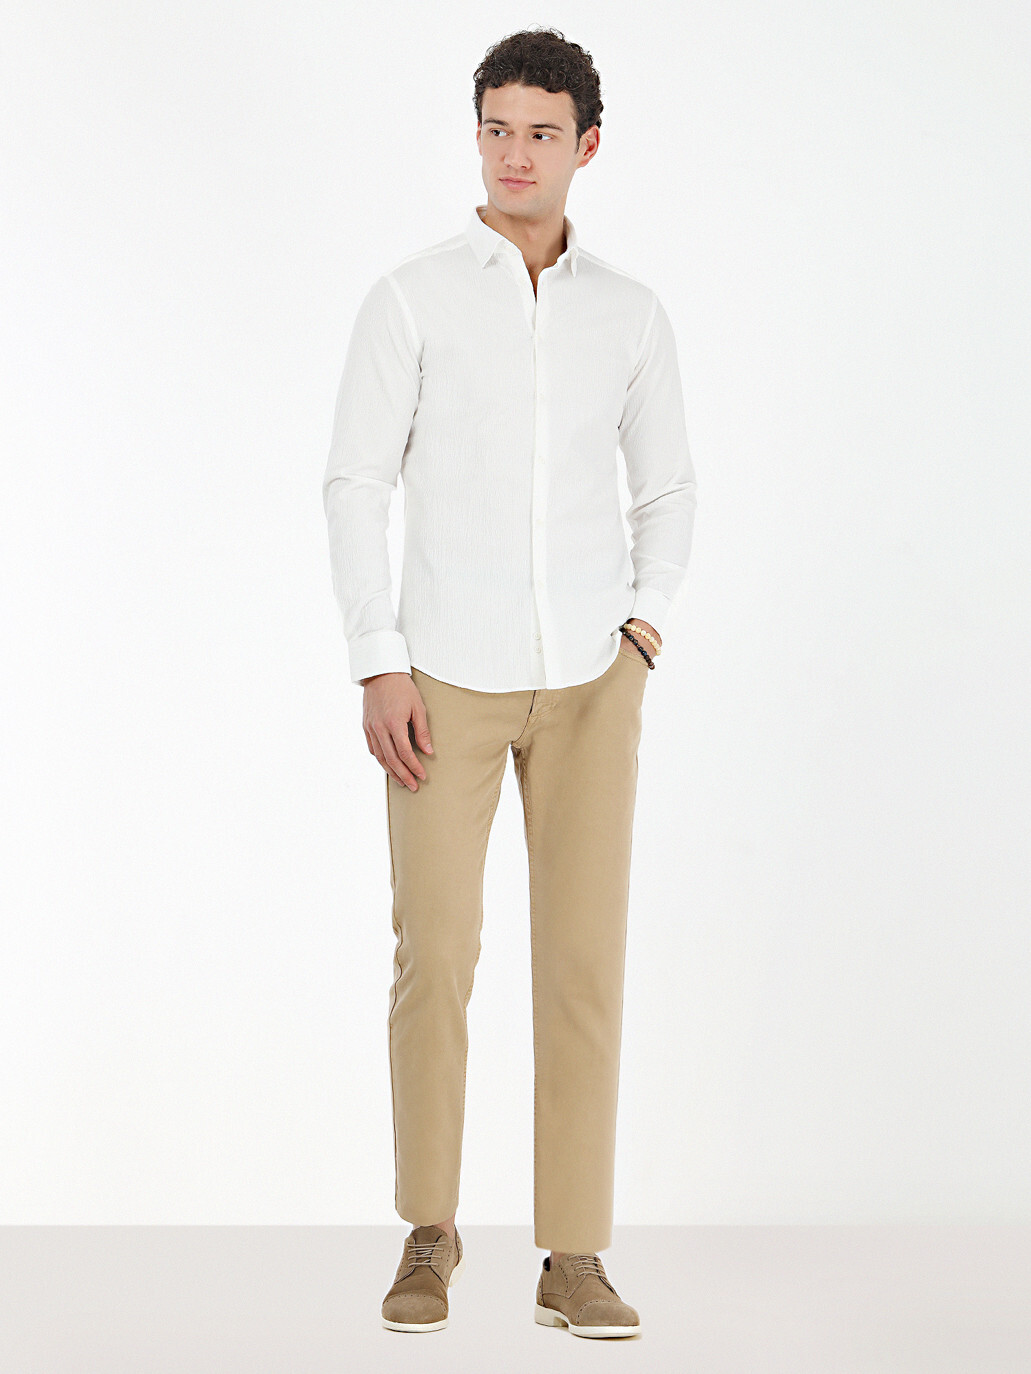 KİP - Beyaz Düz Slim Fit Dokuma Casual Pamuk Karışımlı Gömlek (1)